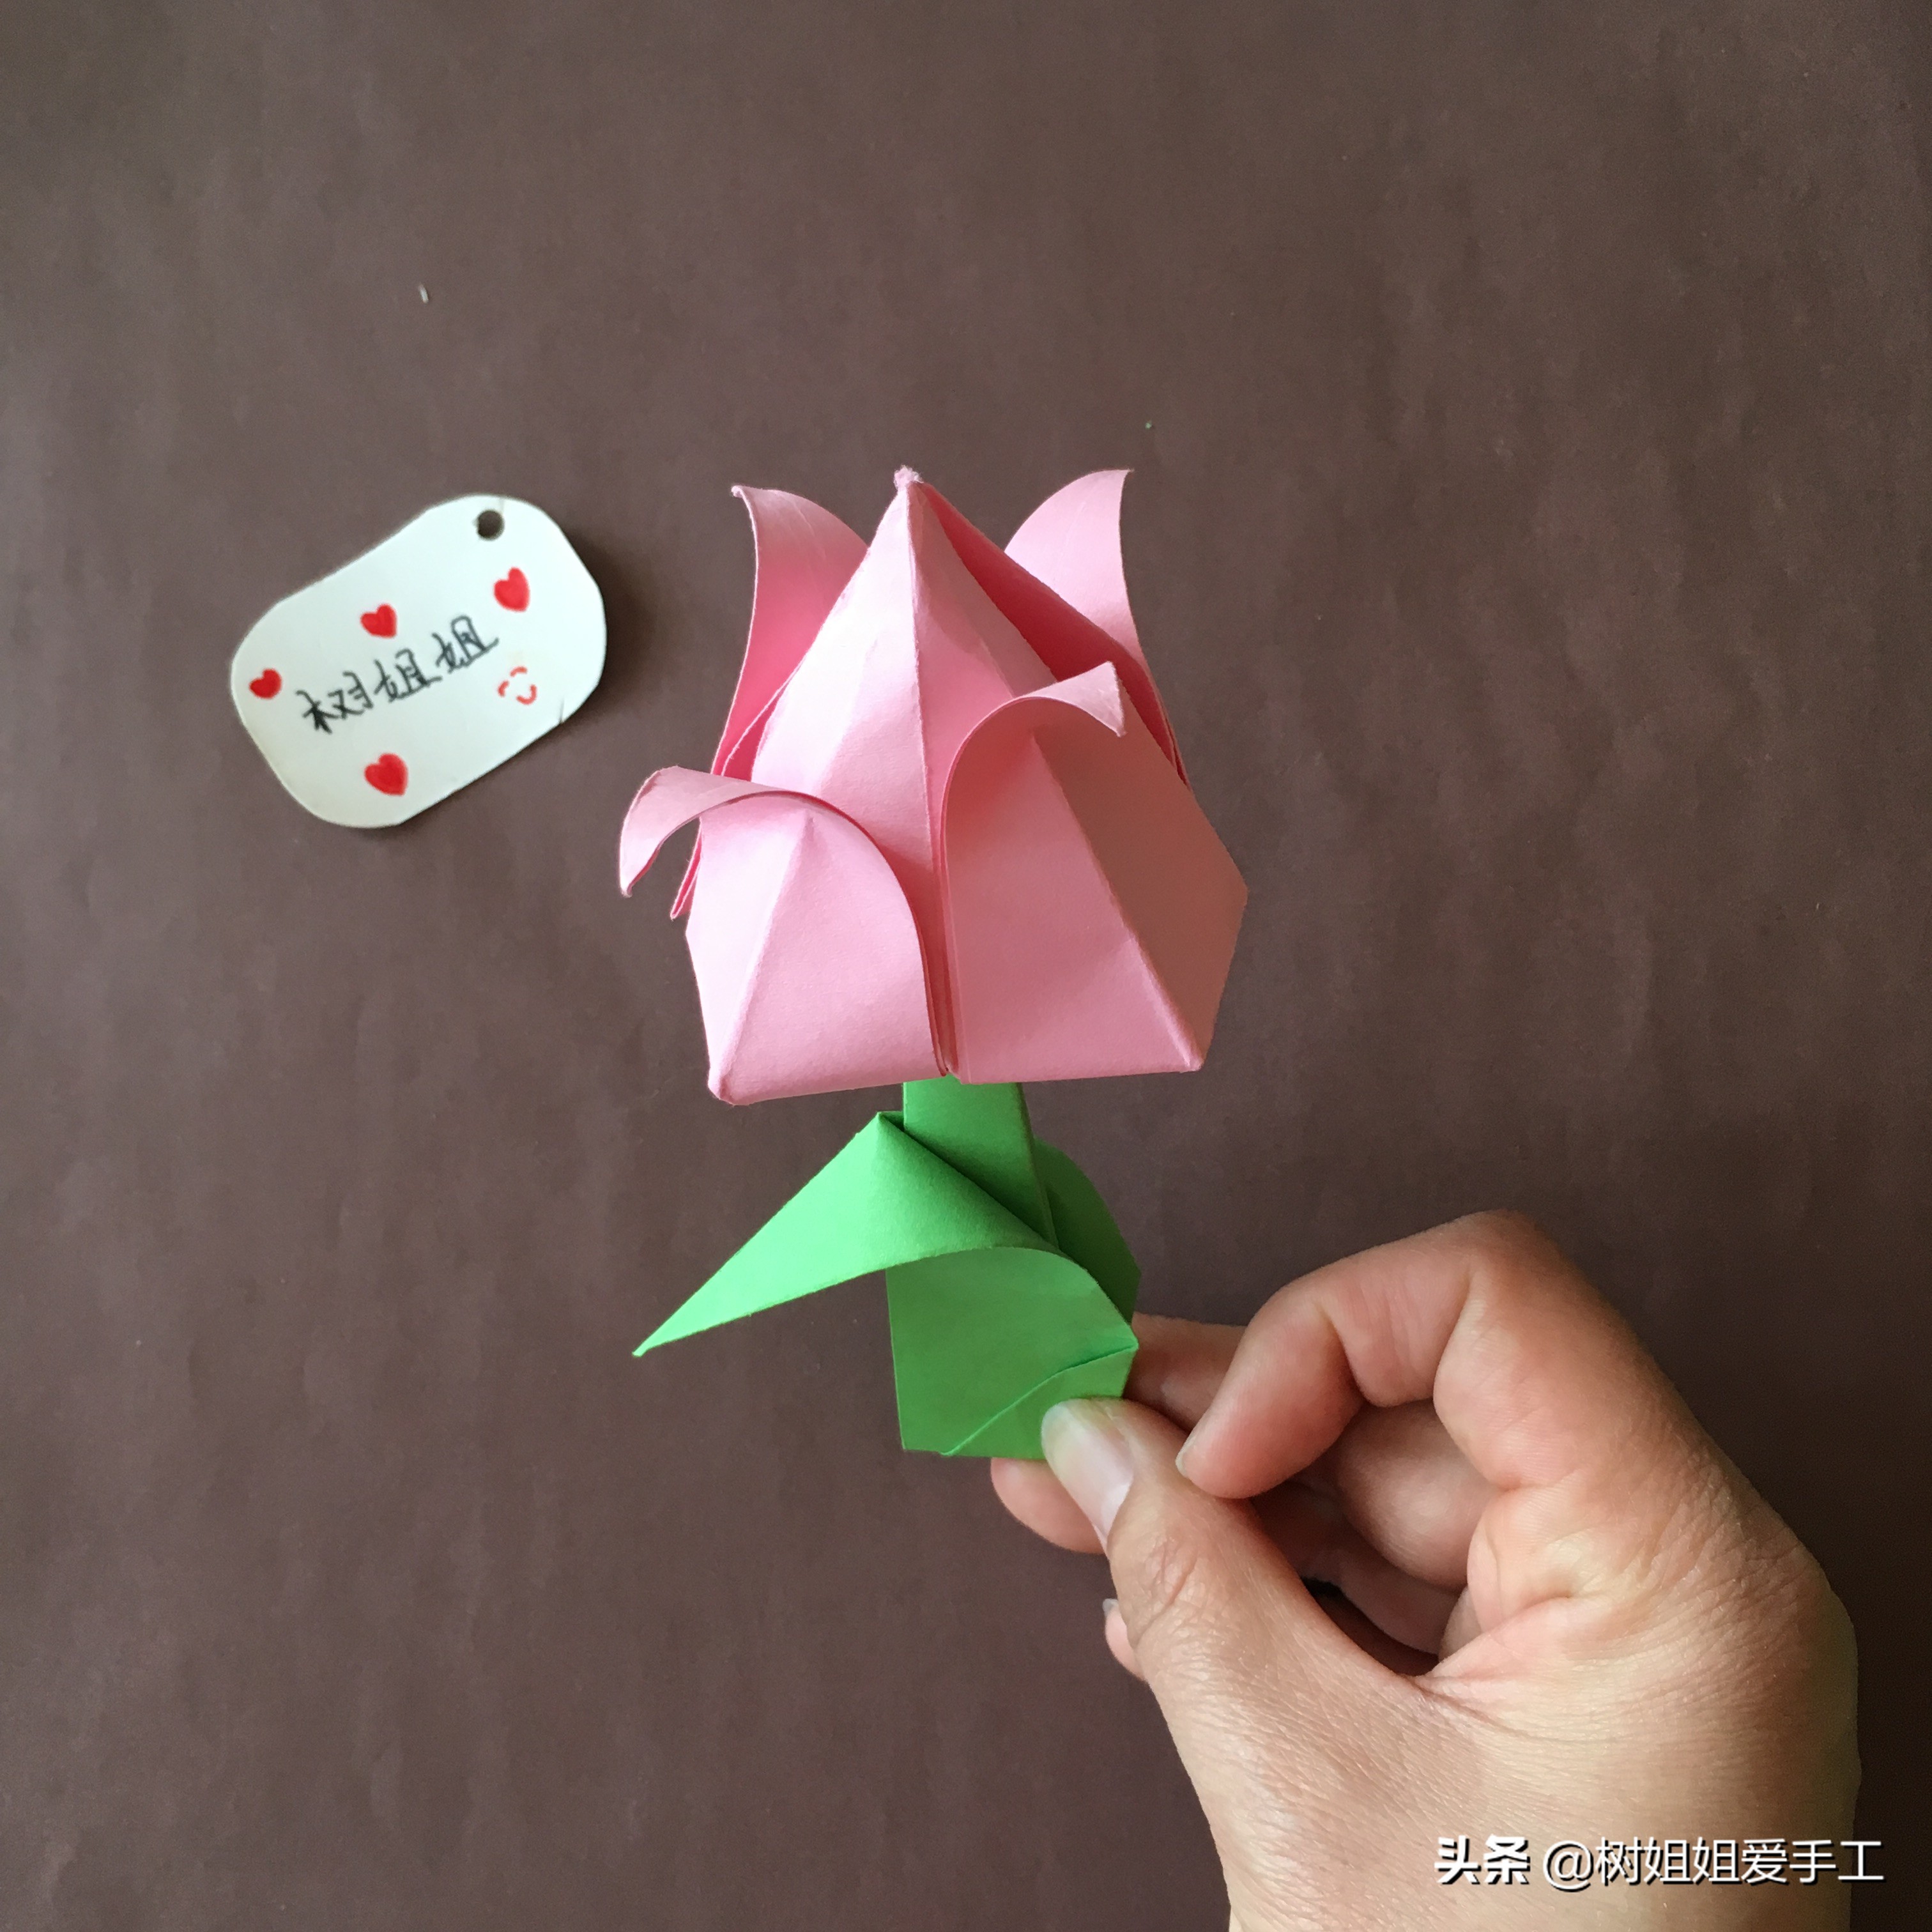 第一步:折花朵(1)首先将正方形彩纸折出米字折痕,然后拉起2条对角线折